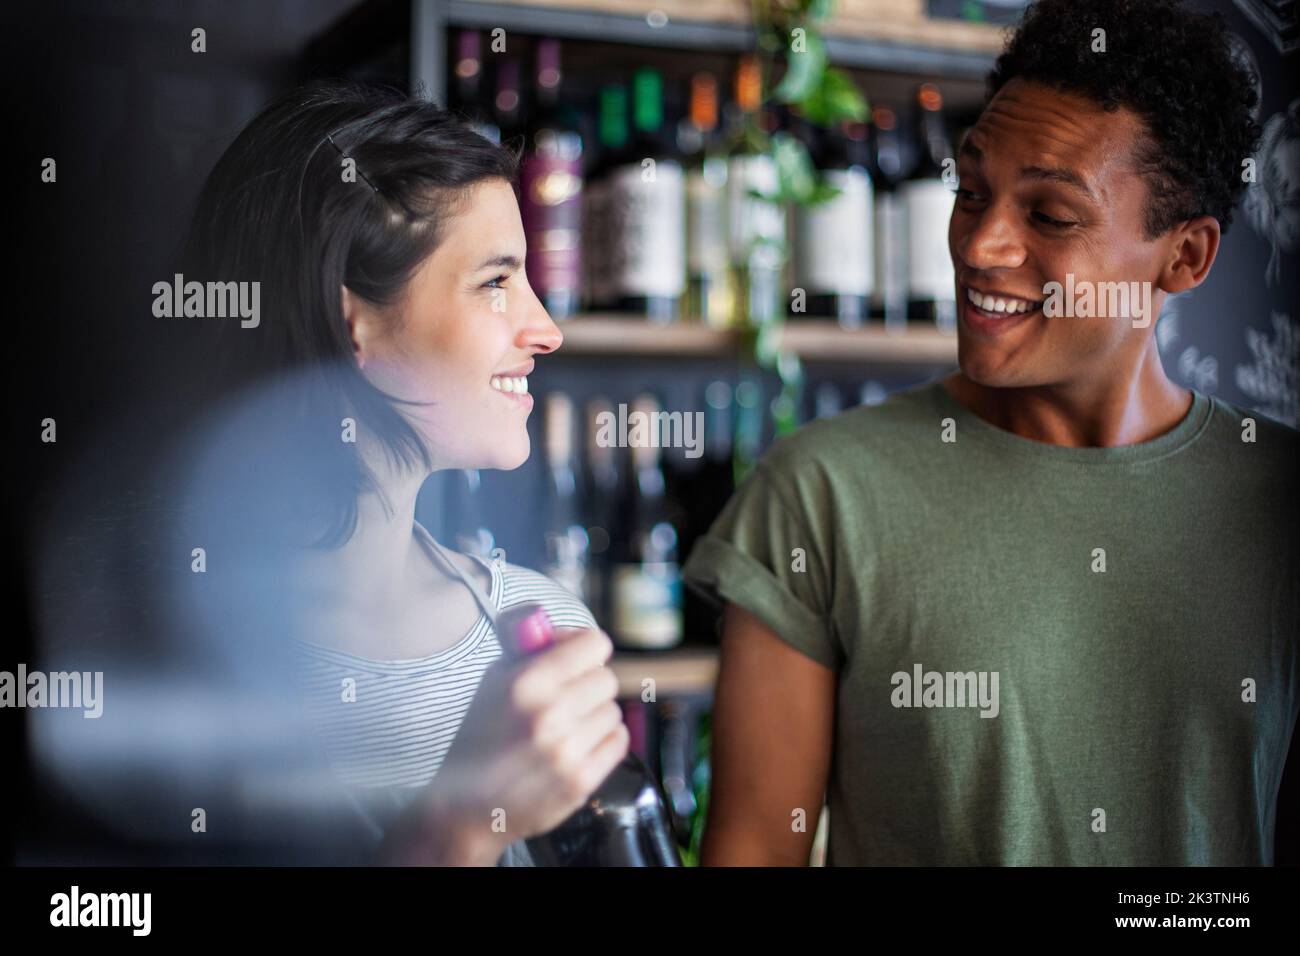 Angestellte im Spirituosengeschäft hält die Flasche, während sie mit dem Kunden spricht Stockfoto